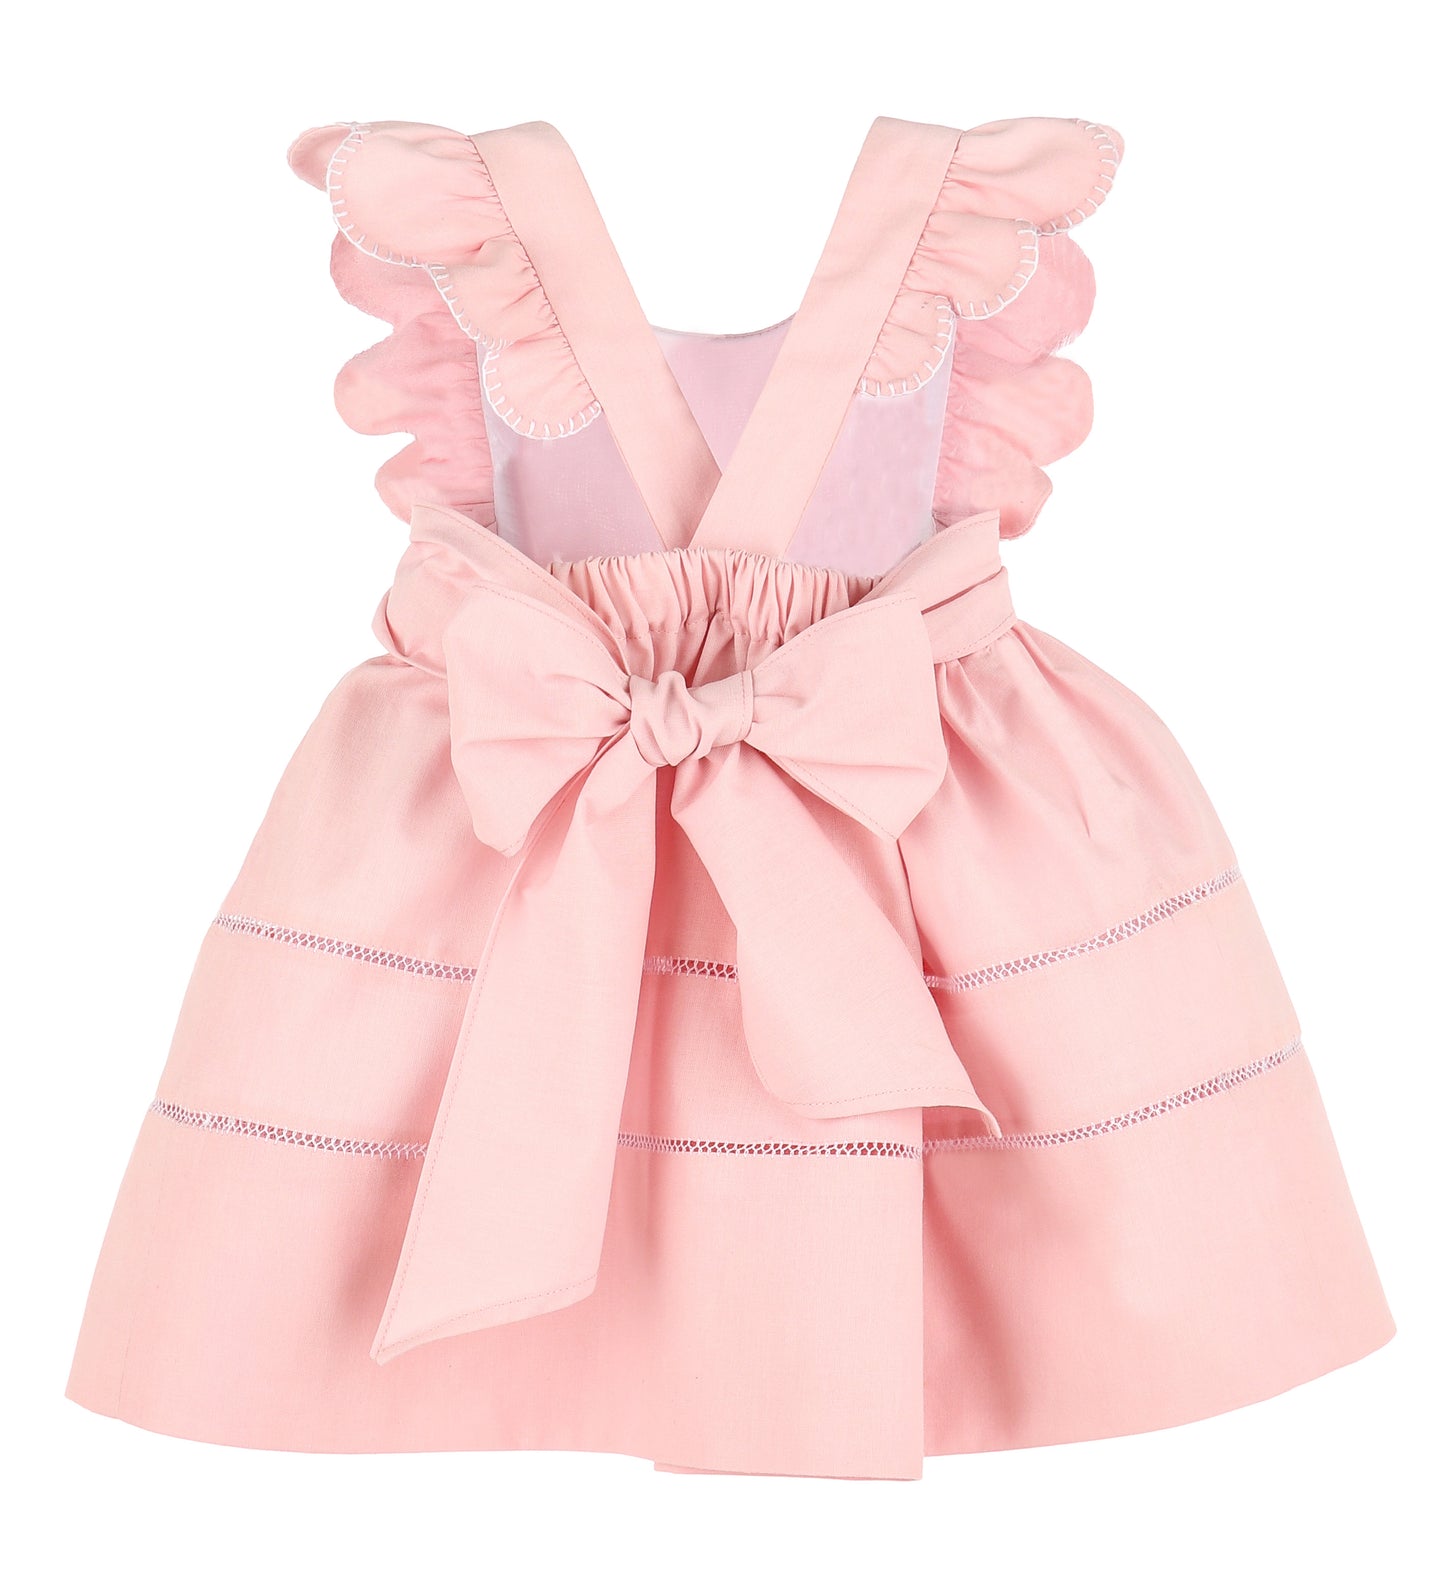 Sophie & Lucas Pink Sunny Spring Dress